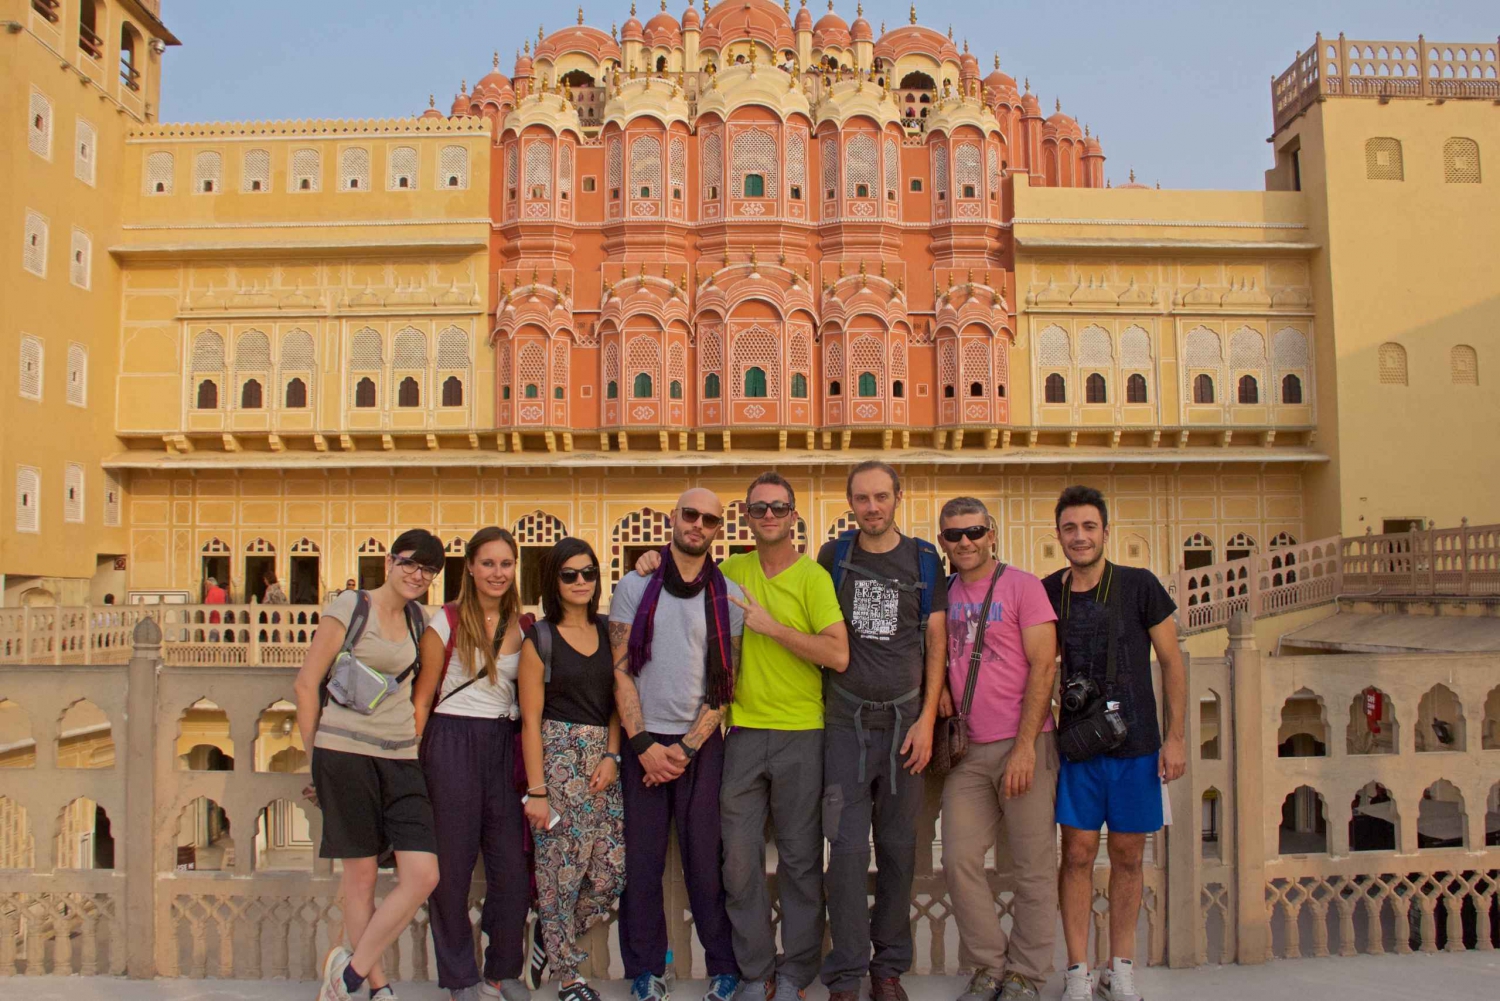 Fra Delhi: Jaipur privat heldags guidet tur